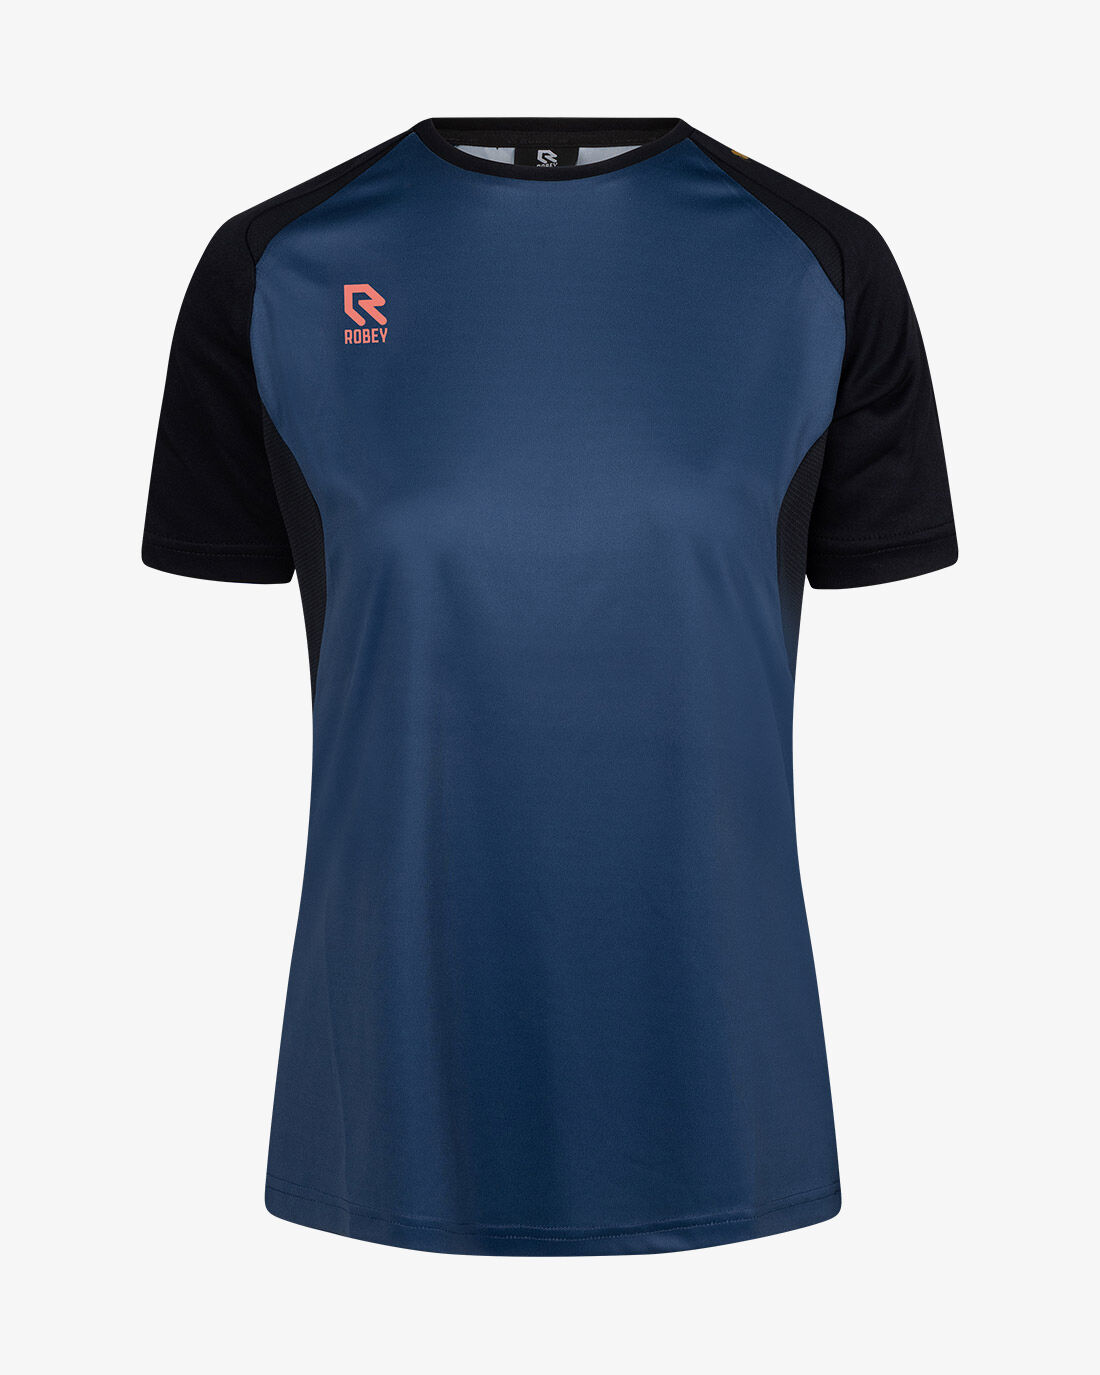 Shirts | robeysportswear.com